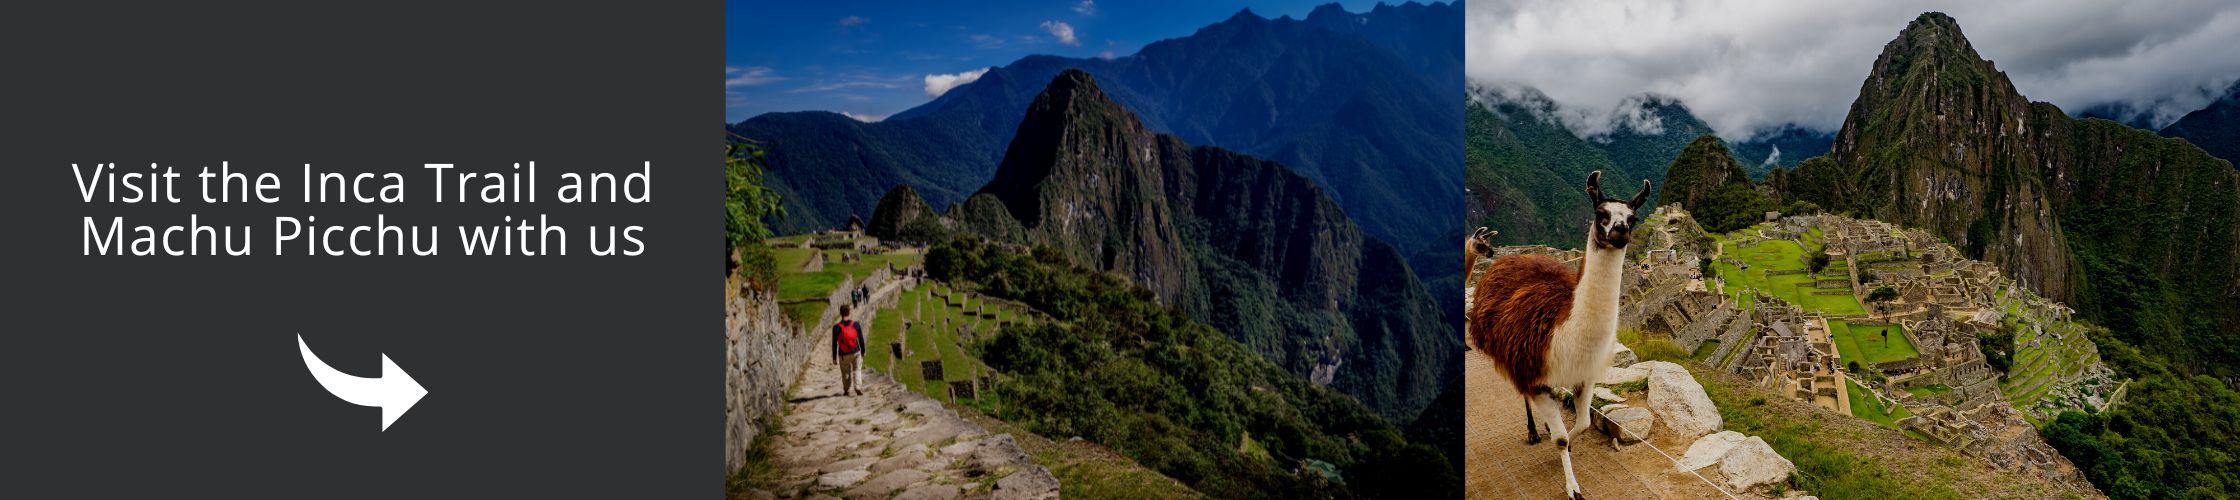 Visit the Inca Trails & Machu Picchu